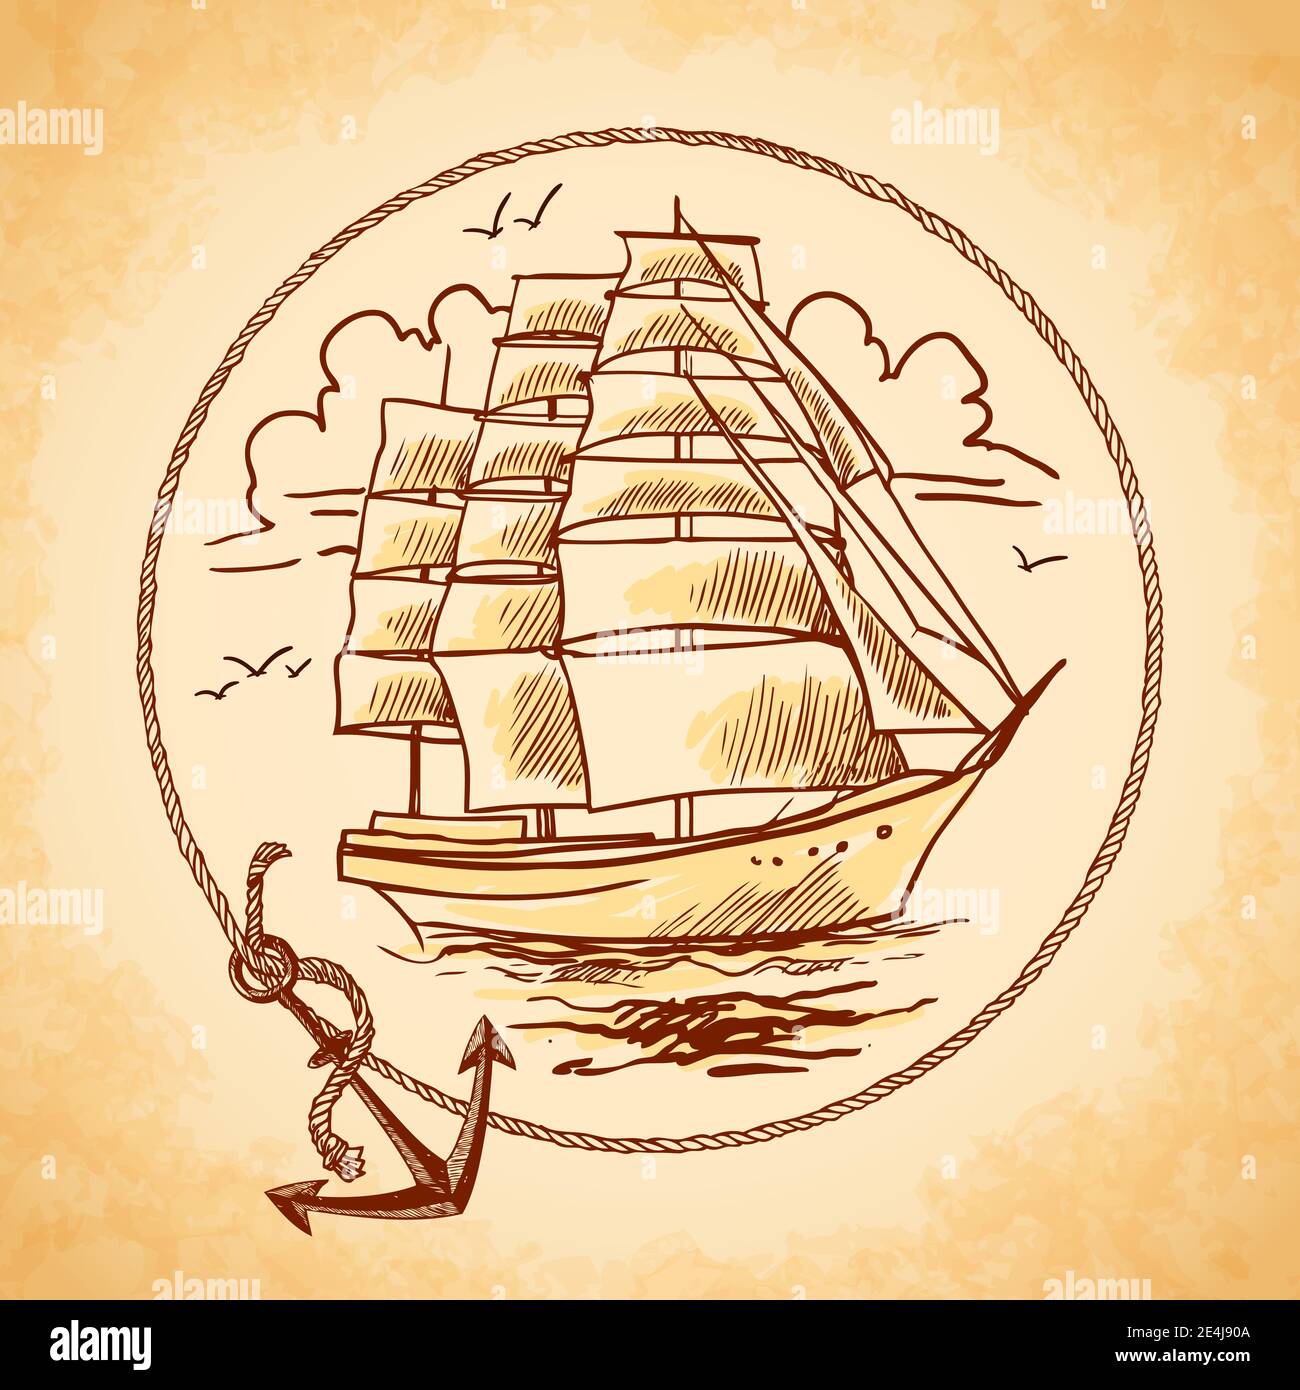 Sailing Boat, Sailing Rope, Sailing Art, Wailing Wall Art, Sailing